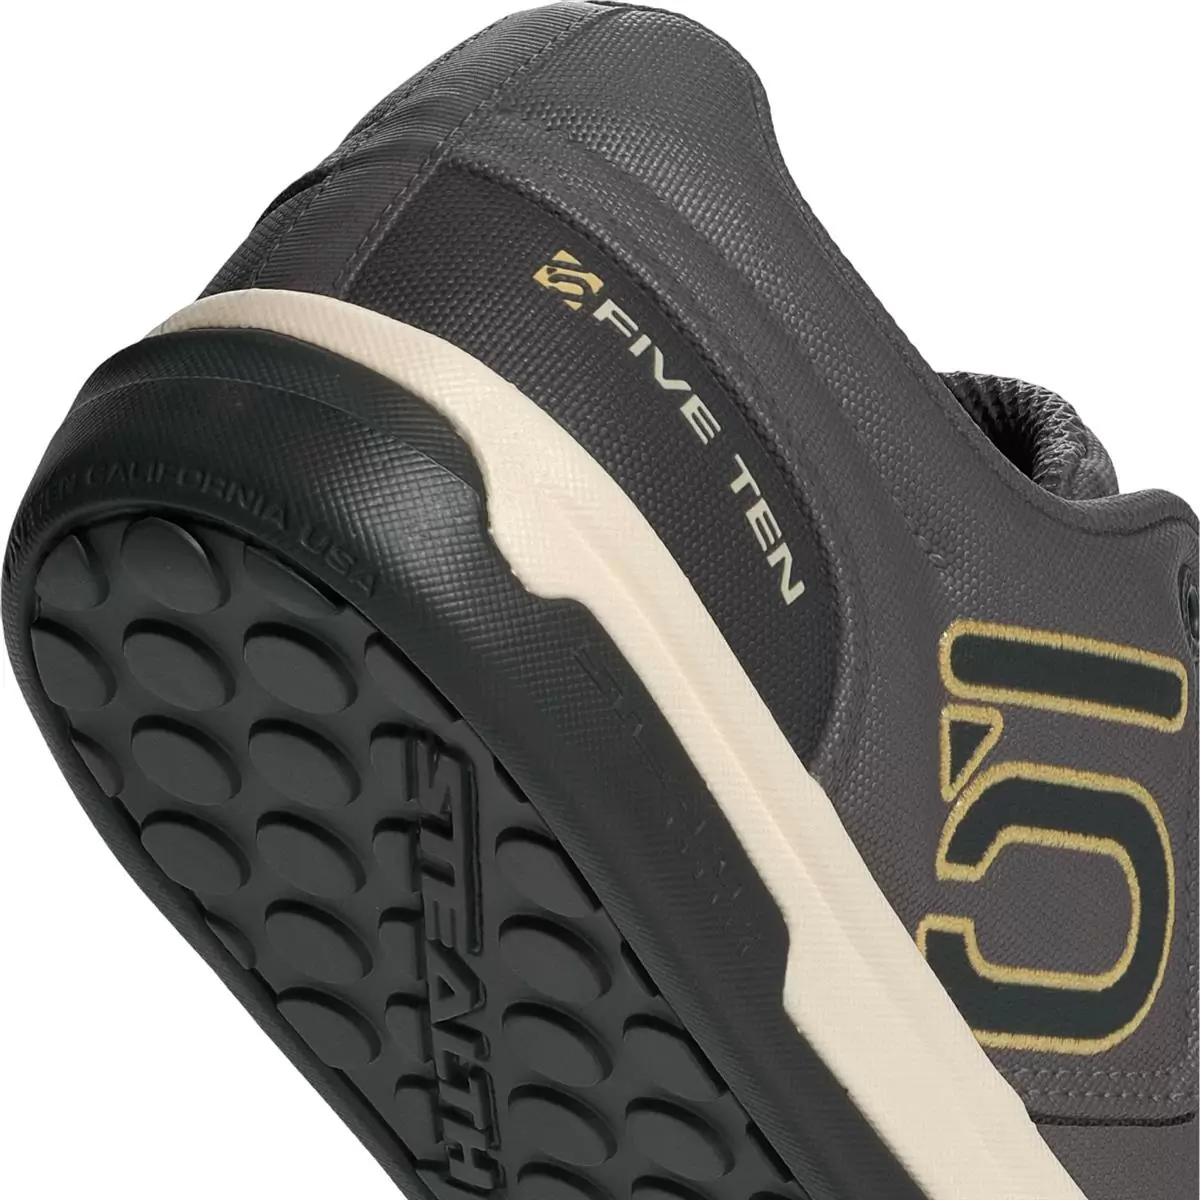 MTB Flat Freerider Pro Canvas Schuhe Schwarz/Grau/Beige Größe 38,5 #7